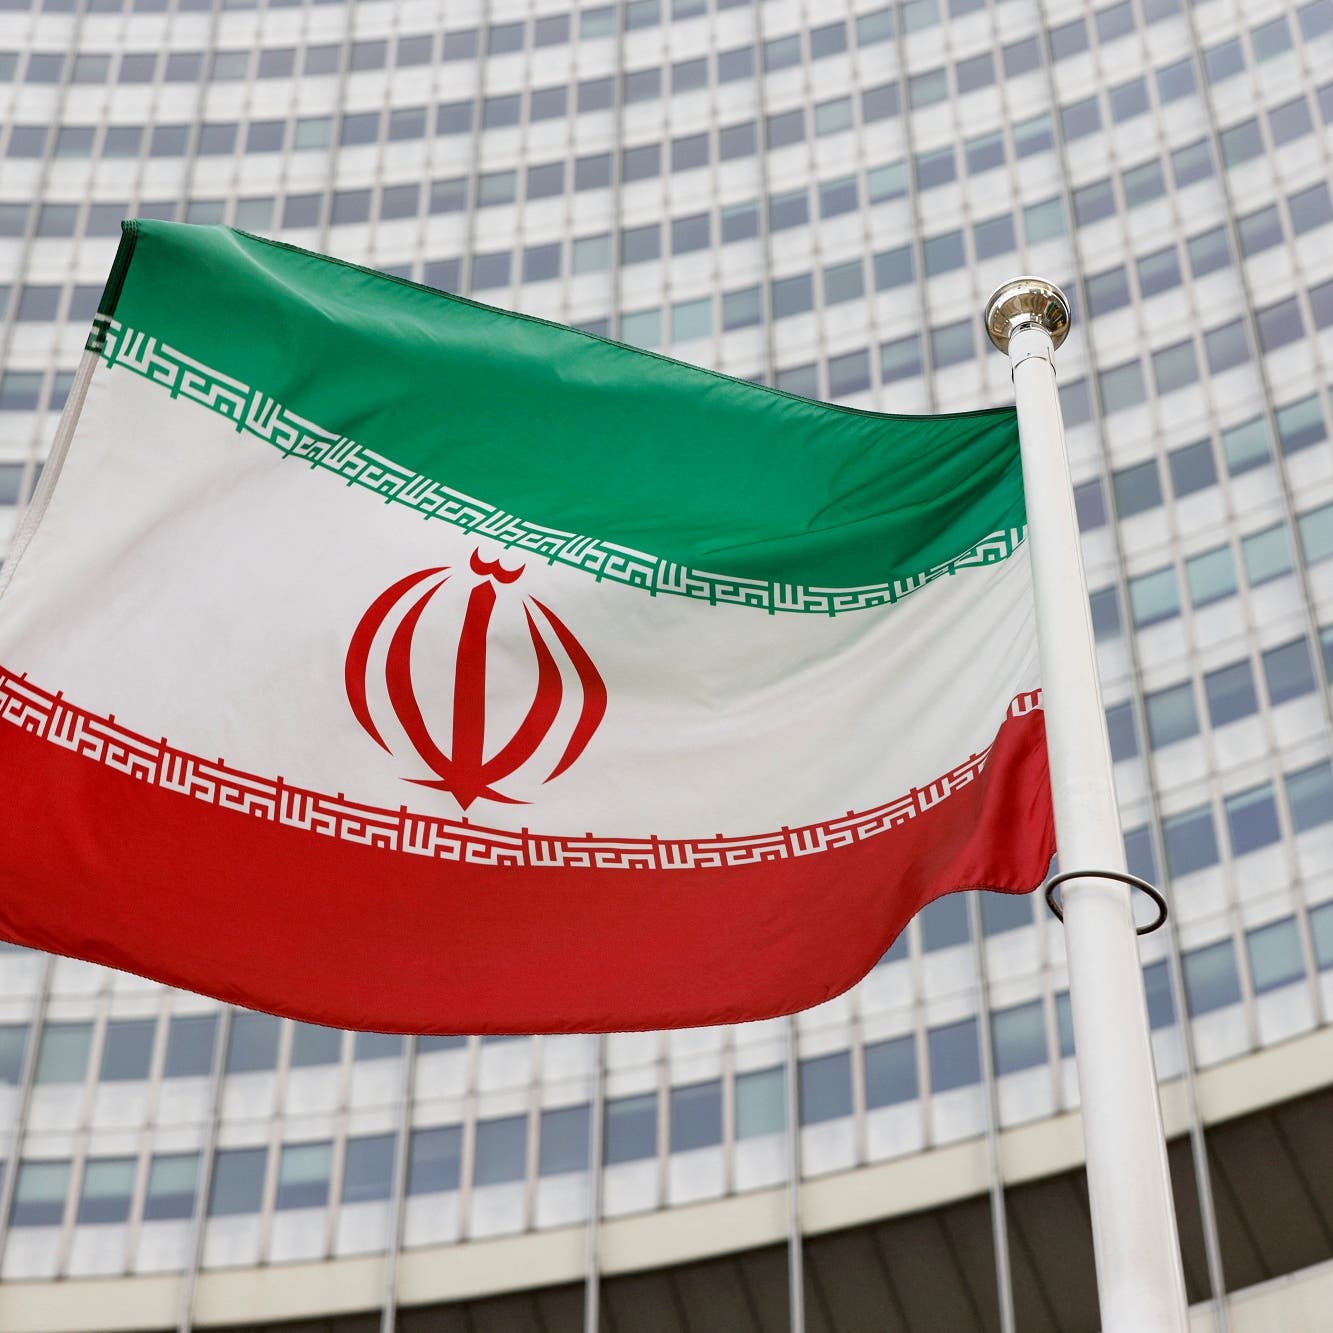 واشنطن: على طهران وقف التصعيد وإعادة بناء الثقة